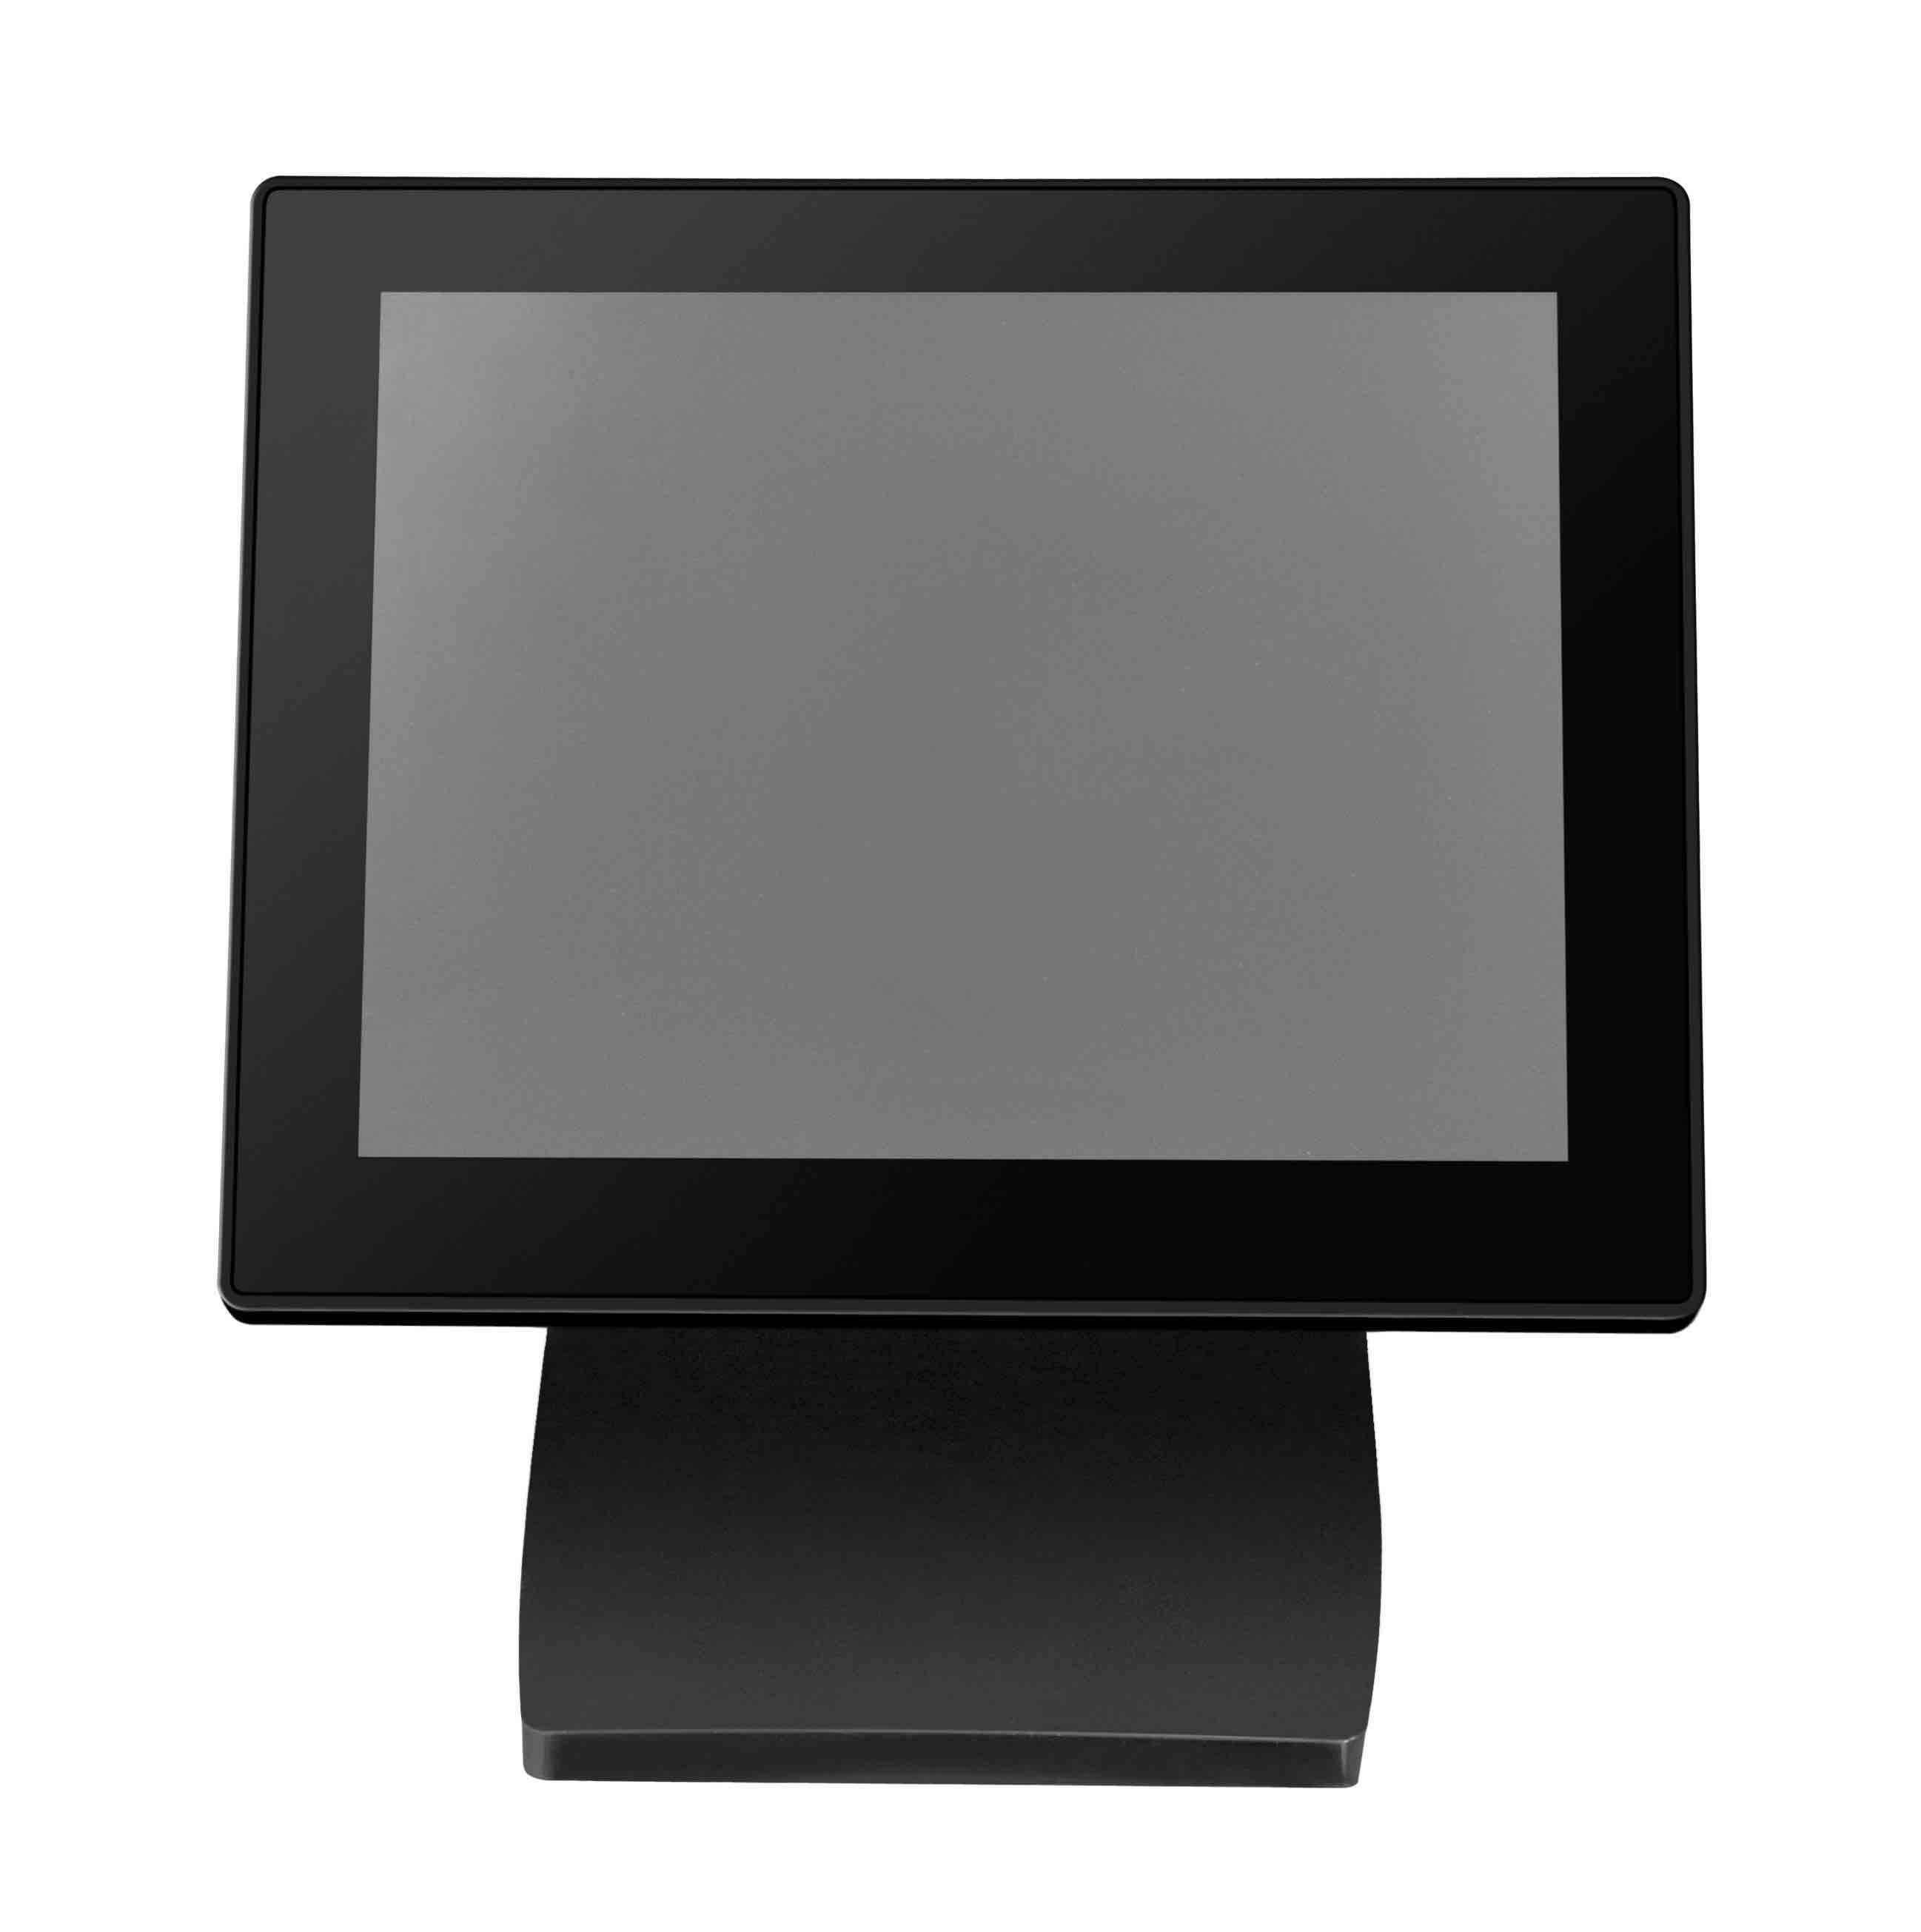 Kundenanzeige 8 Zoll MagicPOS MP080VG mit Schutzglas, schwarz, VGA über USB, große Anzeige